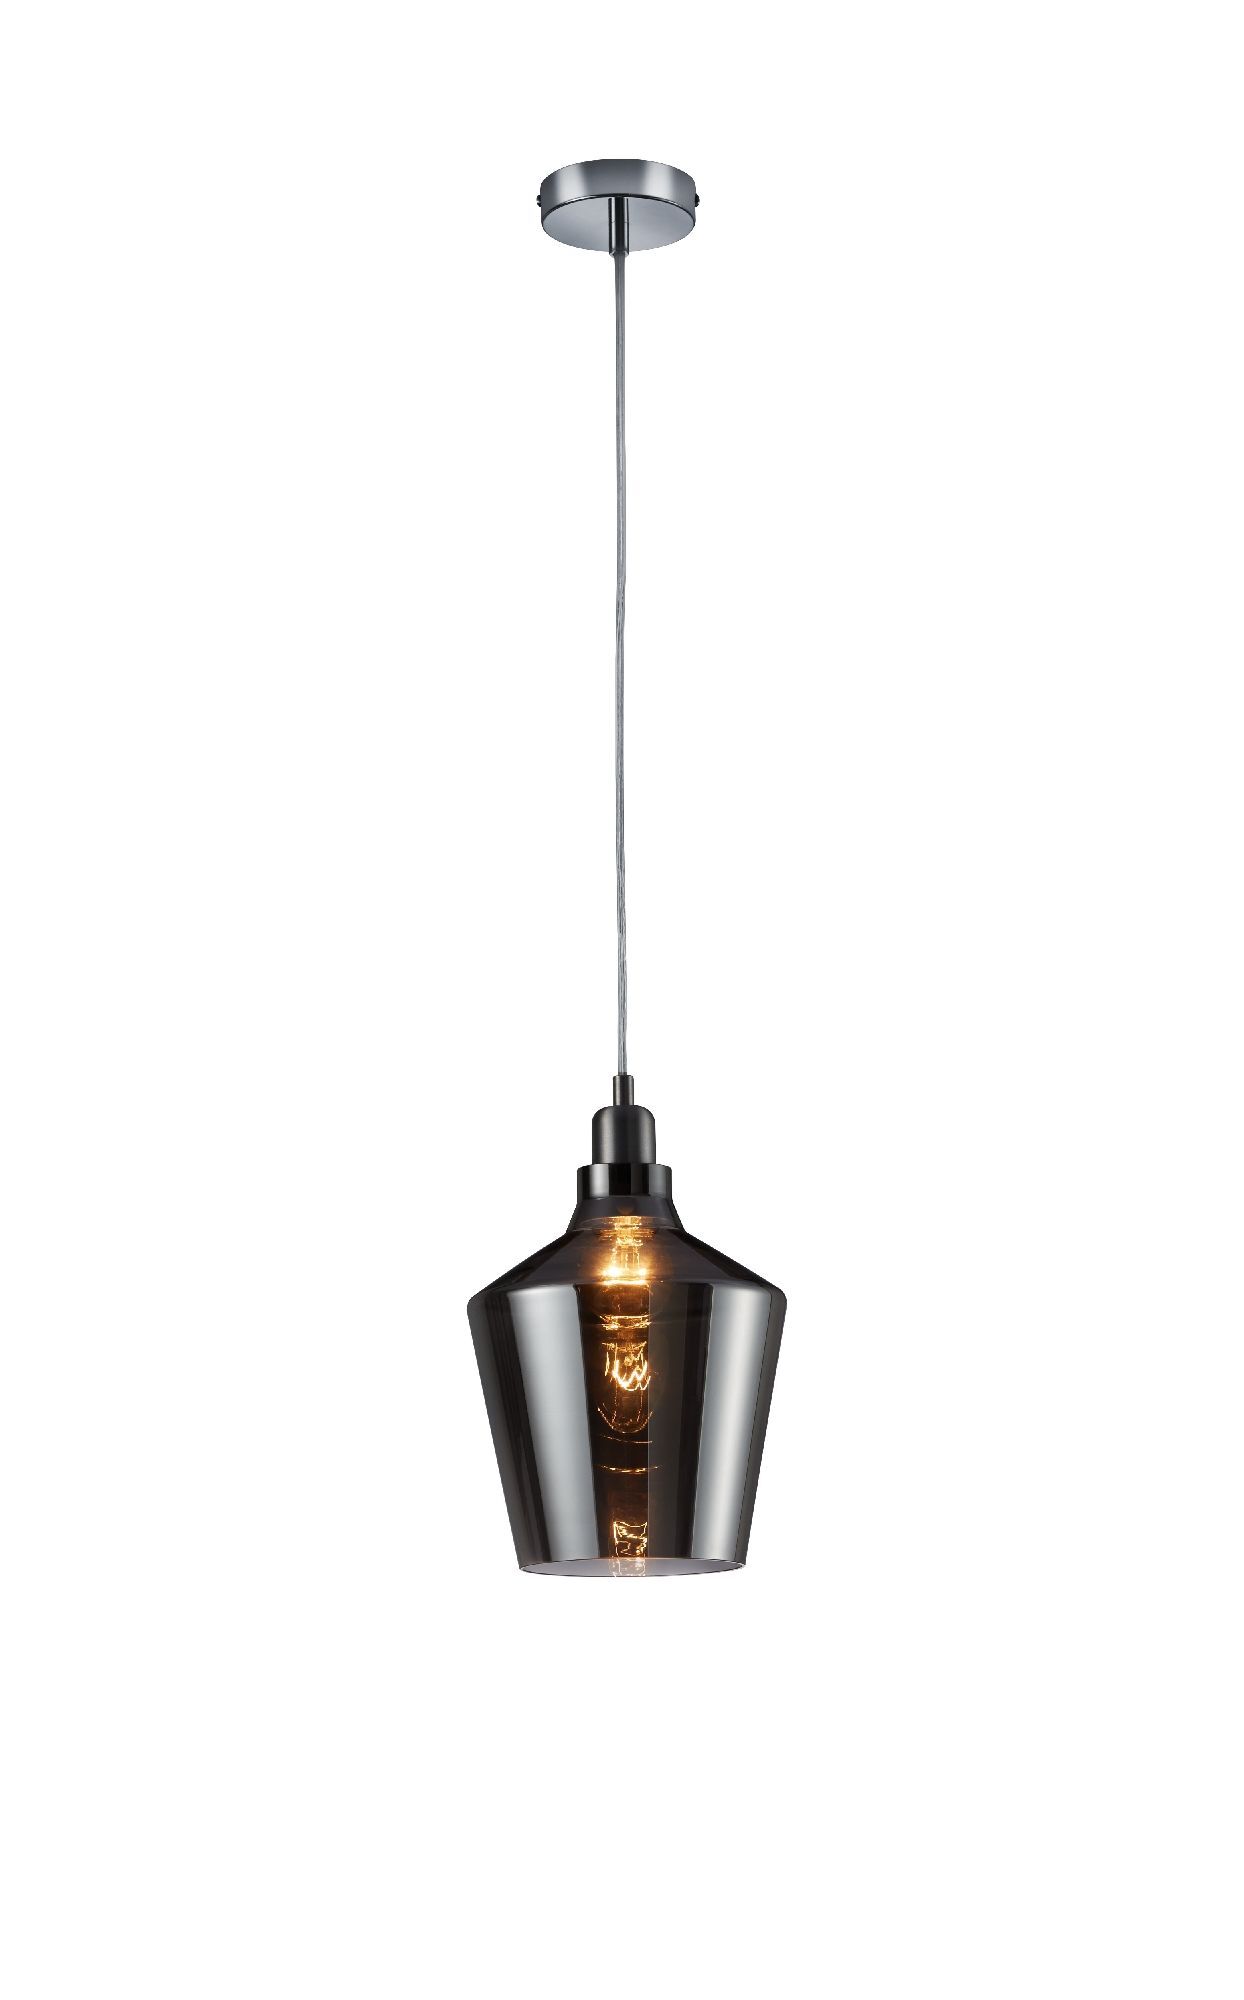 TRIO LEUCHTEN calais hanglamp lifestyle by 304800142